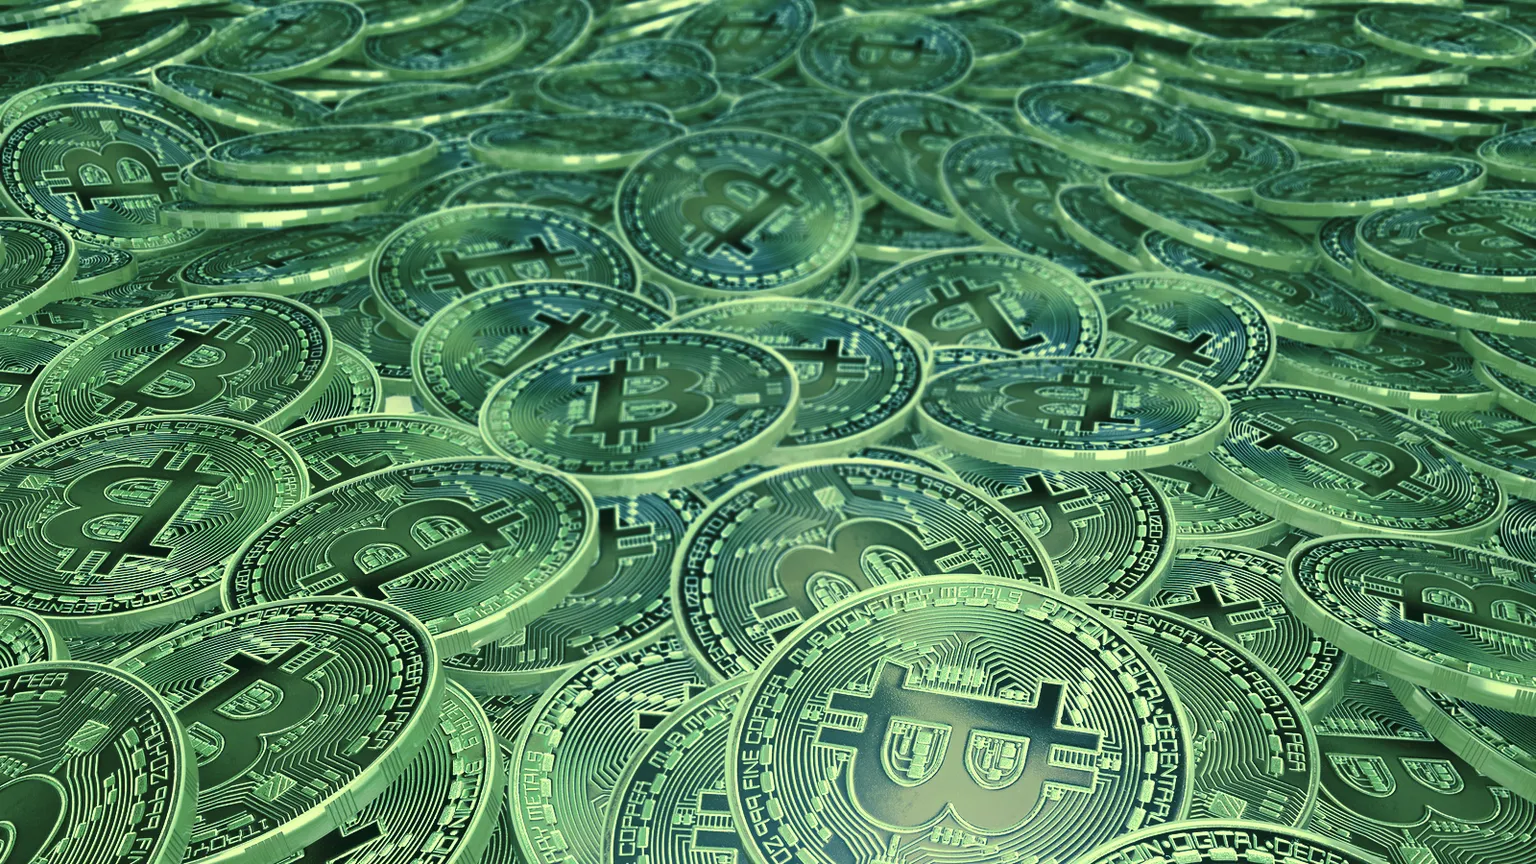 Bitcoin, bitcoin, bitcoin! Image: Shutterstock